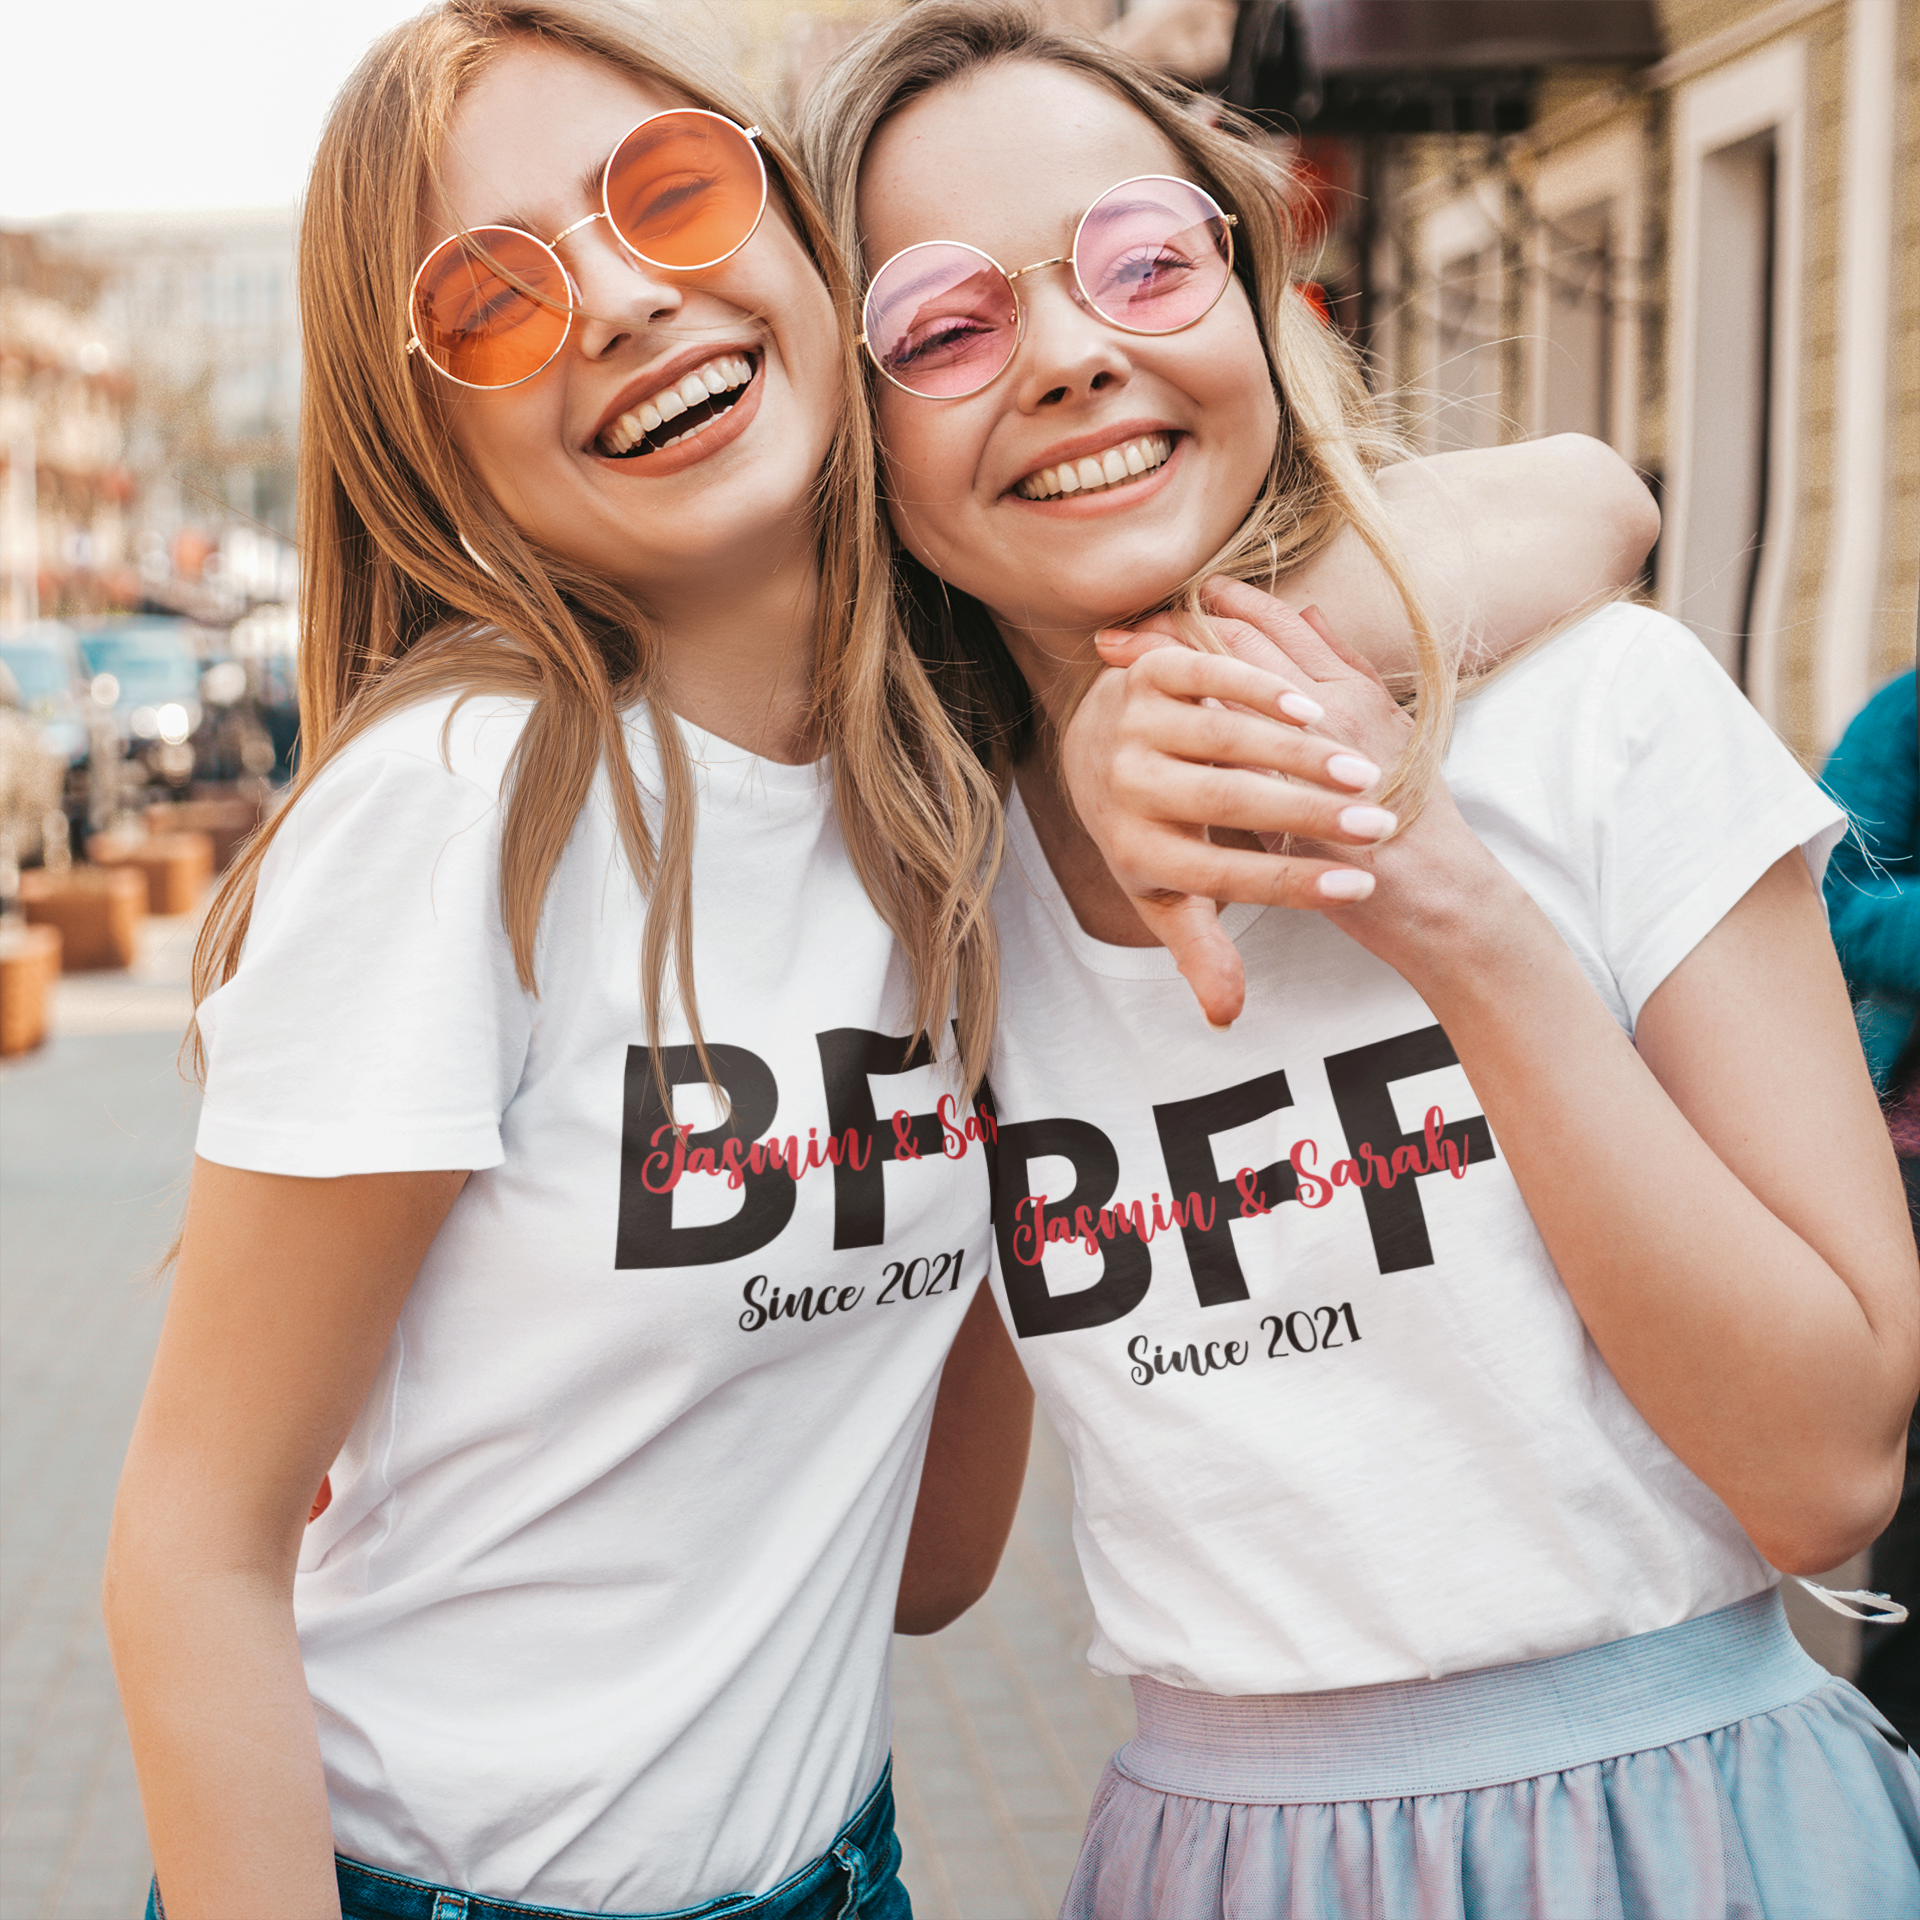 BFF sind ein einzigartig personalisiertes Geschenk für beste Freundinnen. Das T-Shirt Set beinhaltet ein Wunschnamen und Wunschdatum, sodass Sie ein unvergessliches Geschenk mit einem einzigartigen persönlichen Touch machen können. weisse damen tshirts